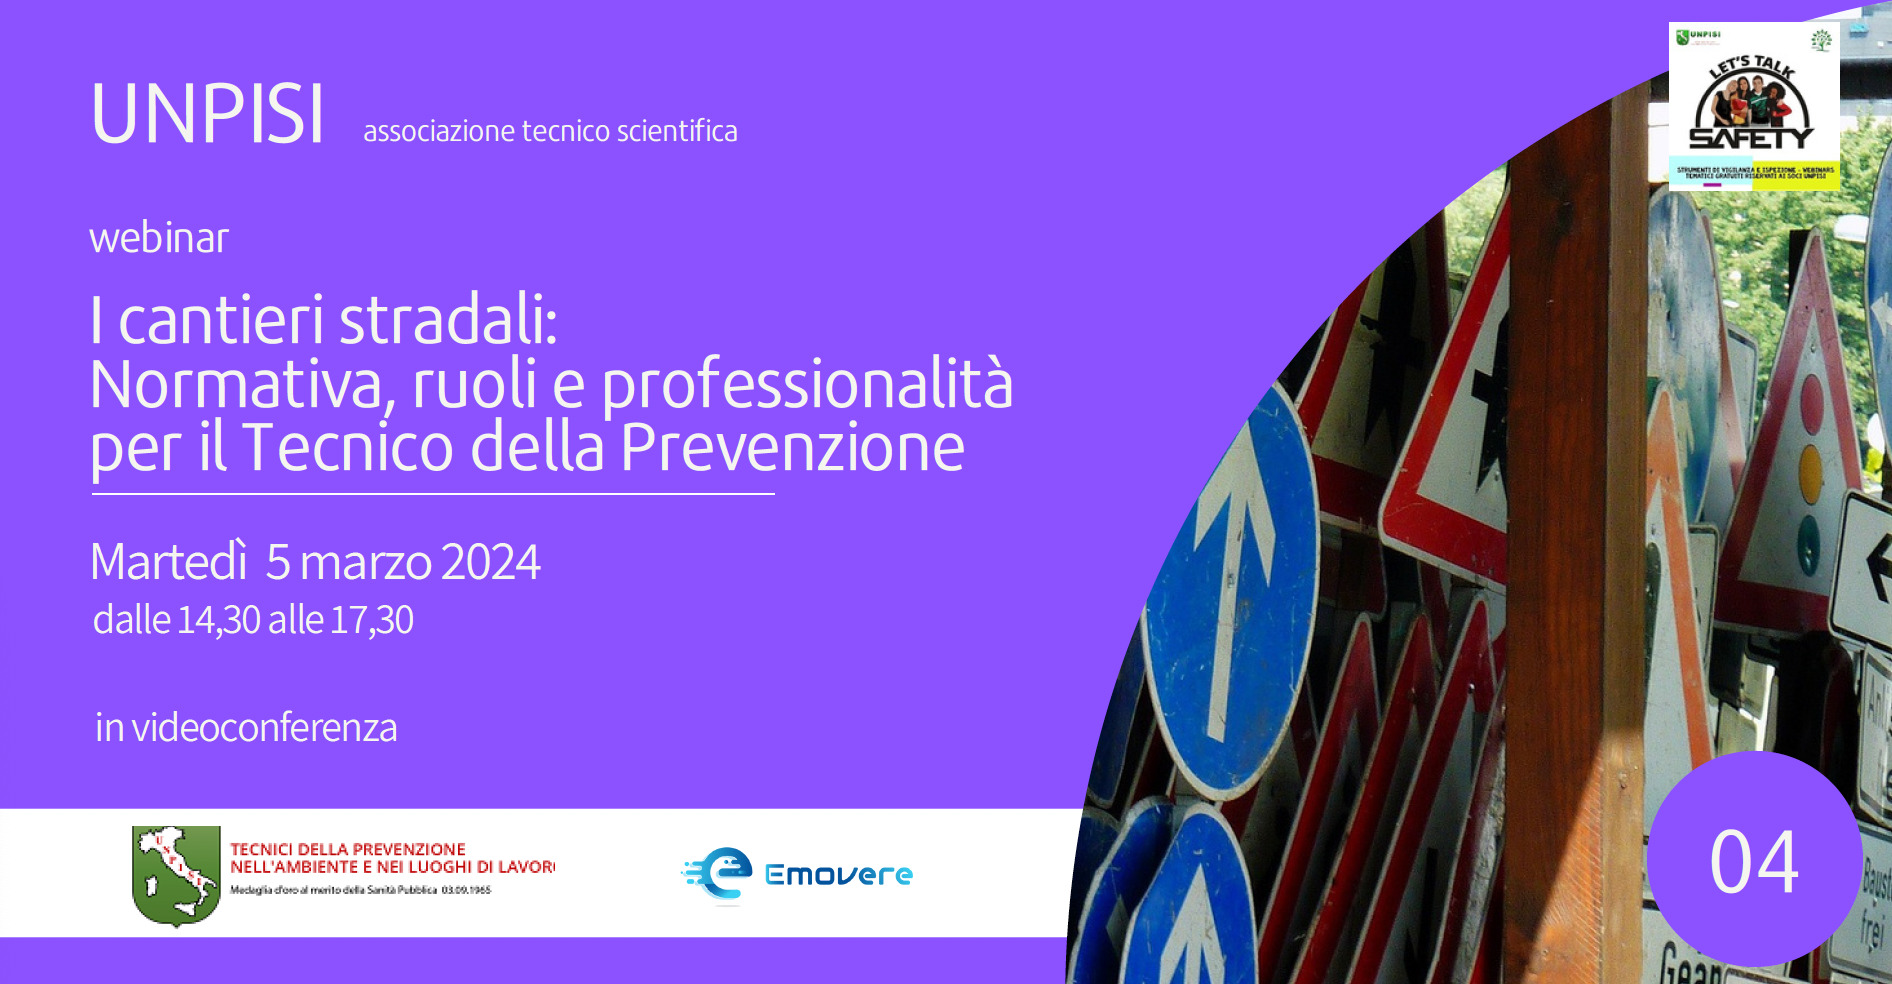 Webinar “I cantieri stradali:Normativa, ruoli e professionalità per il Tecnico della Prevenzione” – 5 marzo 2024